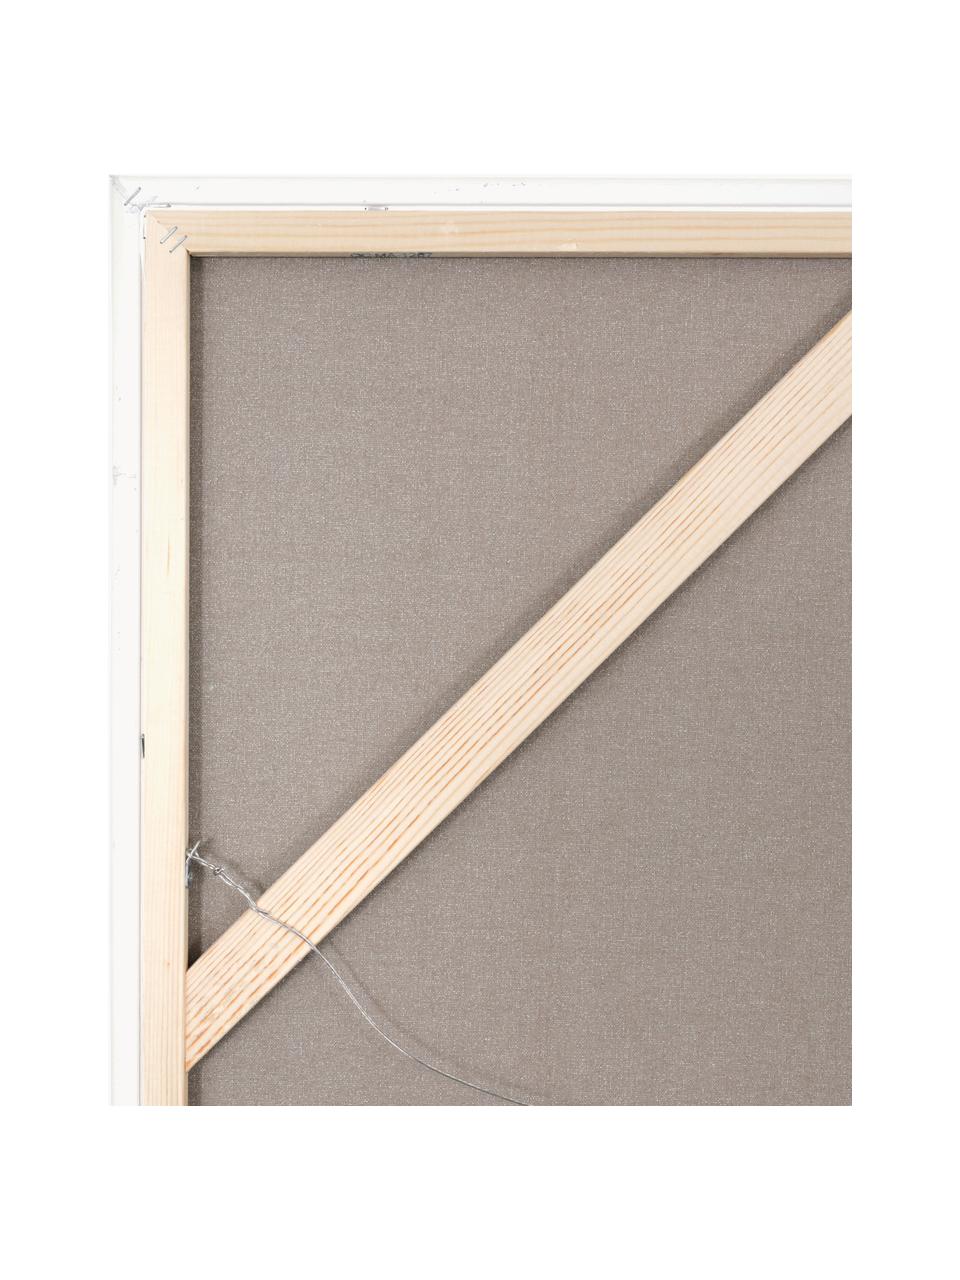 Handgemaltes Leinwandbild Accurate mit Holzrahmen, Rahmen: Eichenholz, beschichtet, Beige- und Grautöne, B 92 x H 120 cm